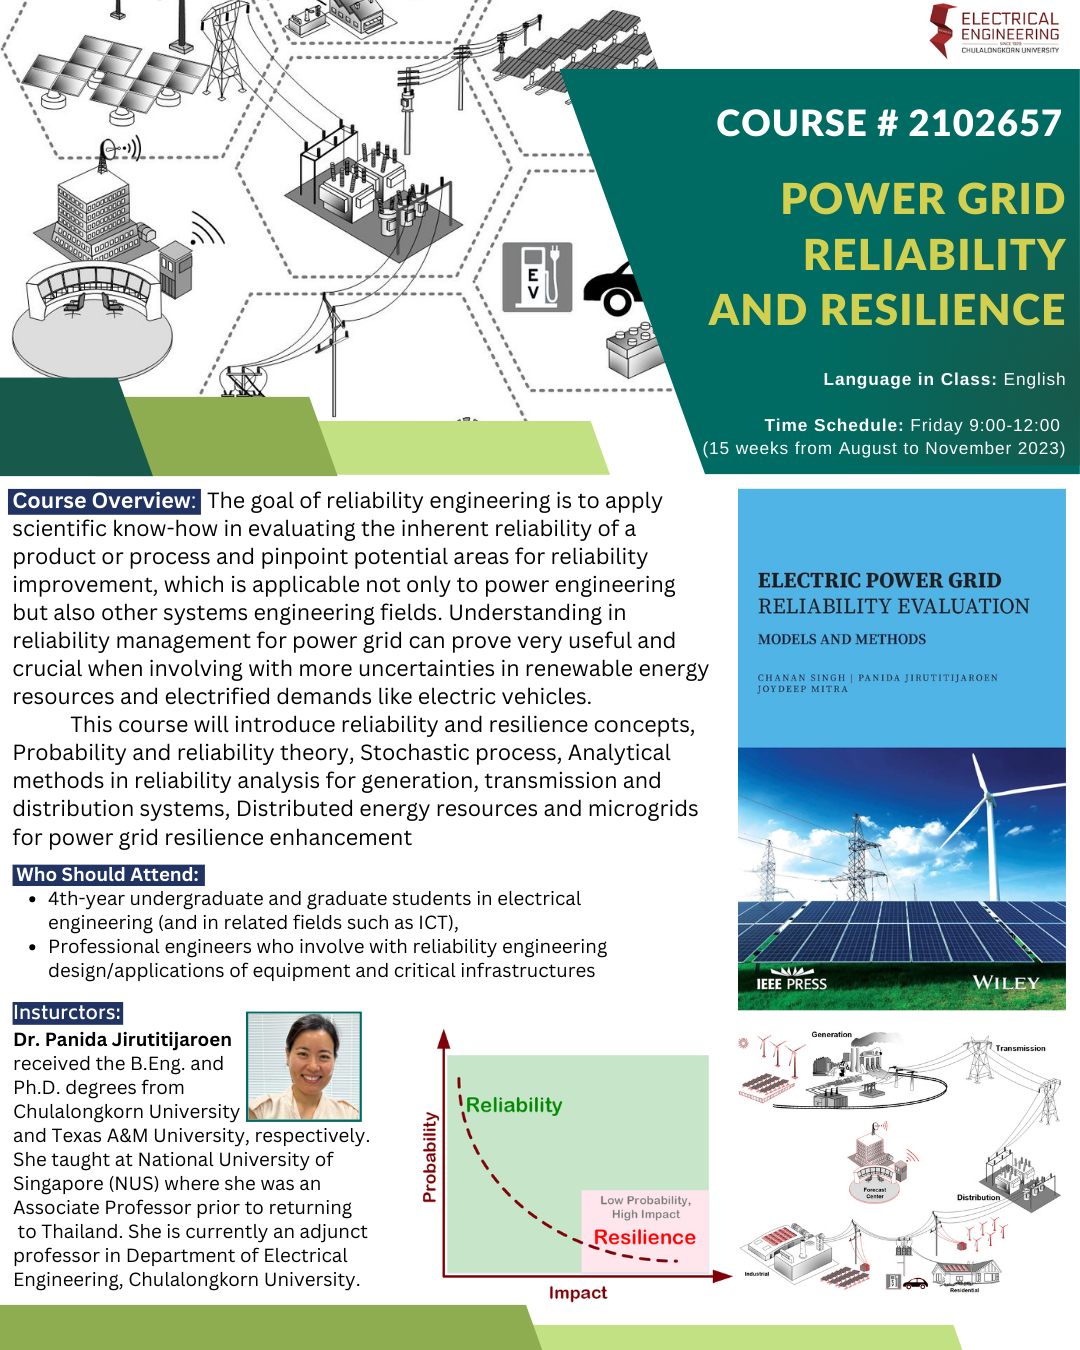 😊 เชิญชวนนิสิตจุฬาฯ ลงทะเบียนเรียนวิชา 2102657 "Power Grid Reliability and Resilience"